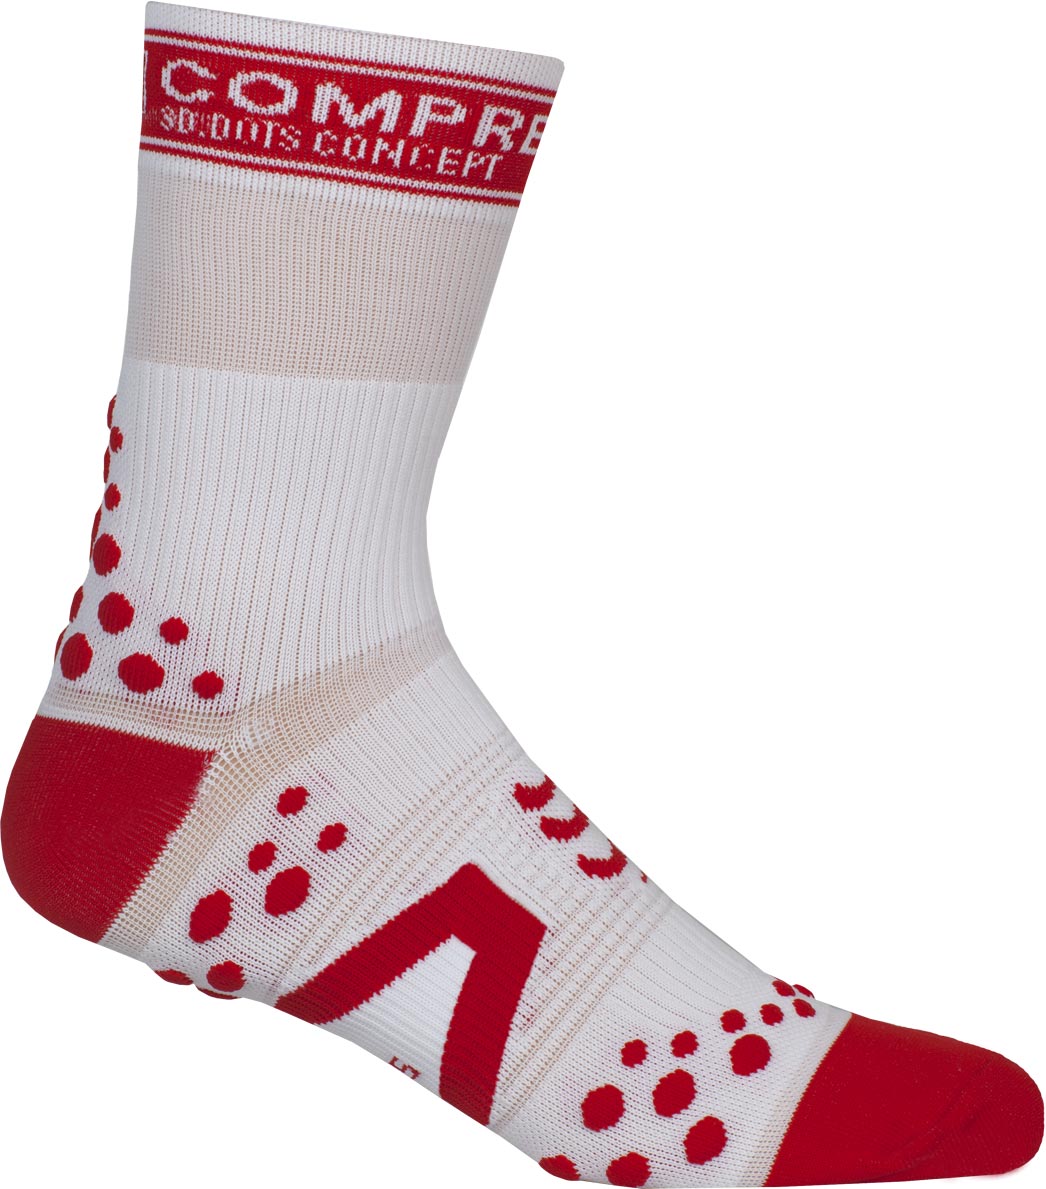 BIKE HI - Compression socks